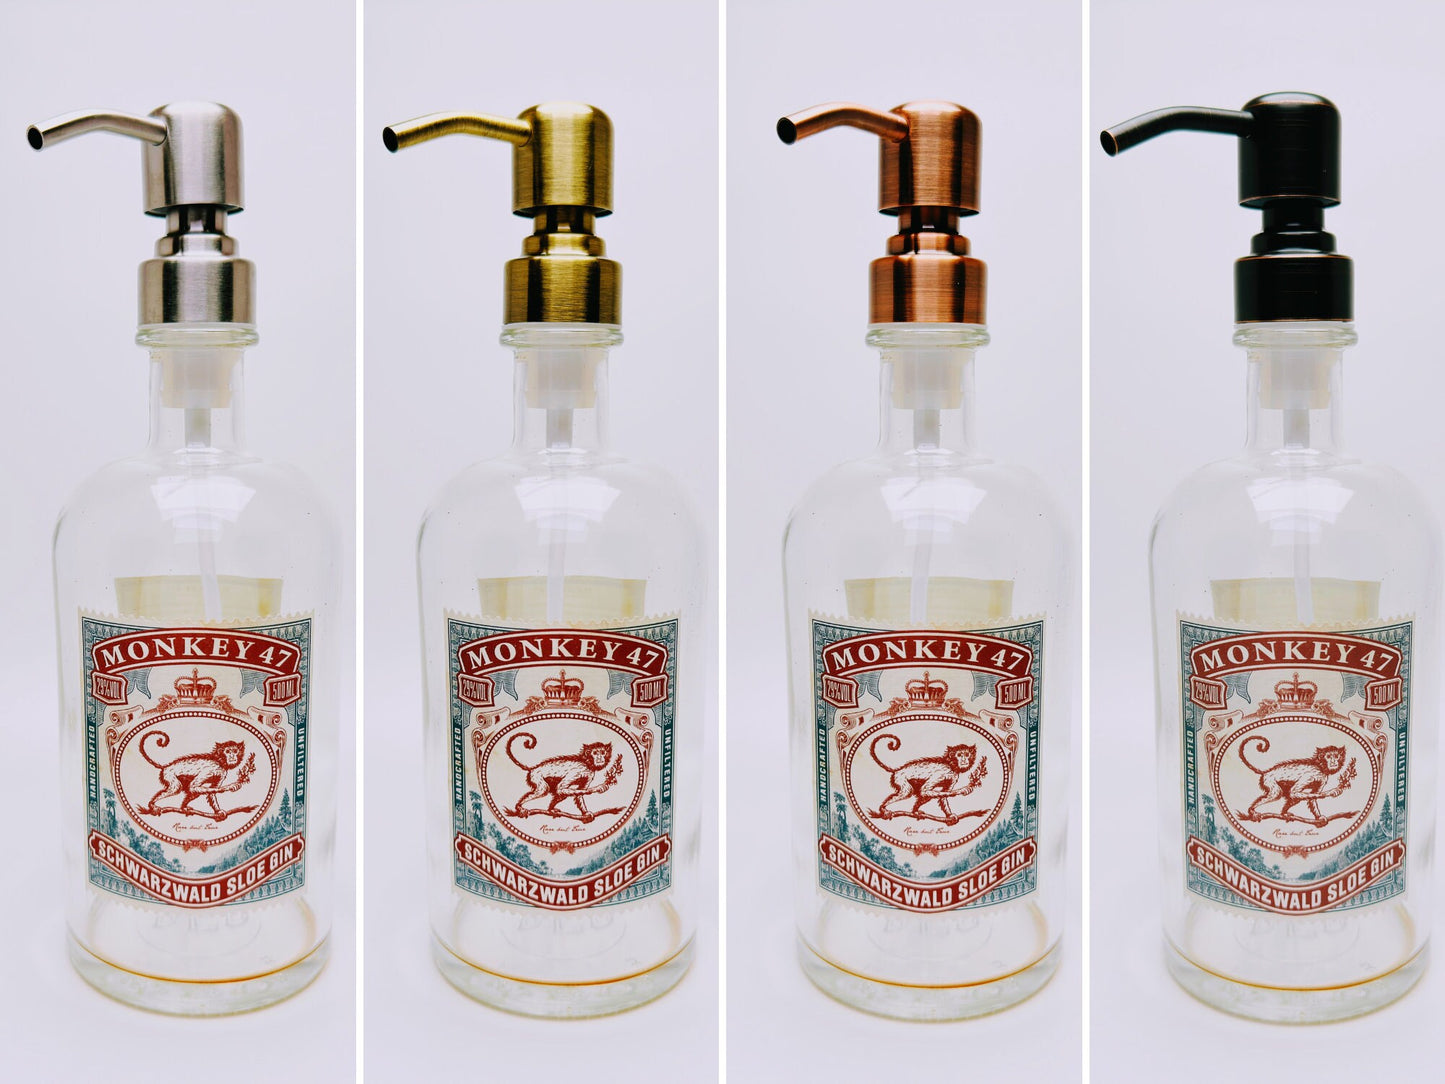 Gin-Seifenspender "Monkey 47" | Upcycling Pumpspender aus Monkey47 Gin Flasche | Nachfüllbar mit Seife | Bad Deko | Geschenk Schwarzwald